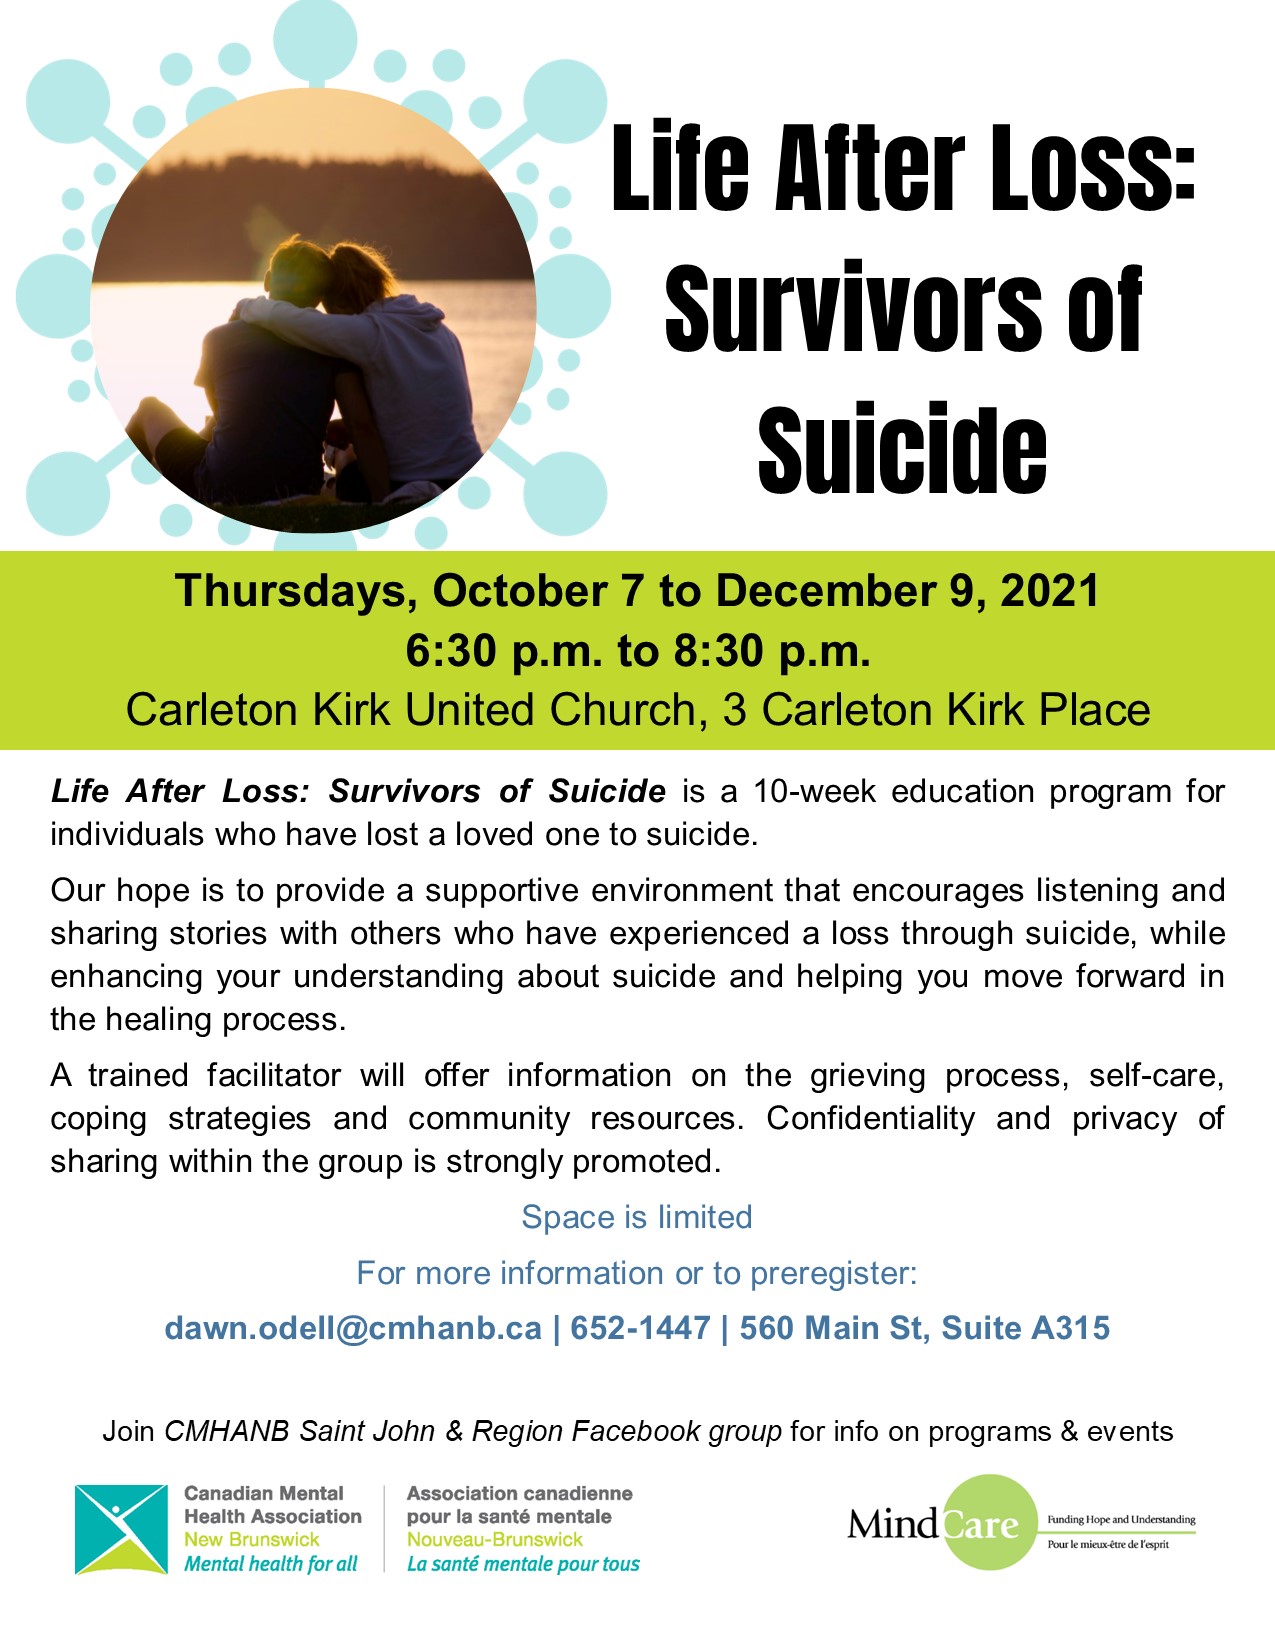 Life After Loss: Survivors of Suicide (Saint John)